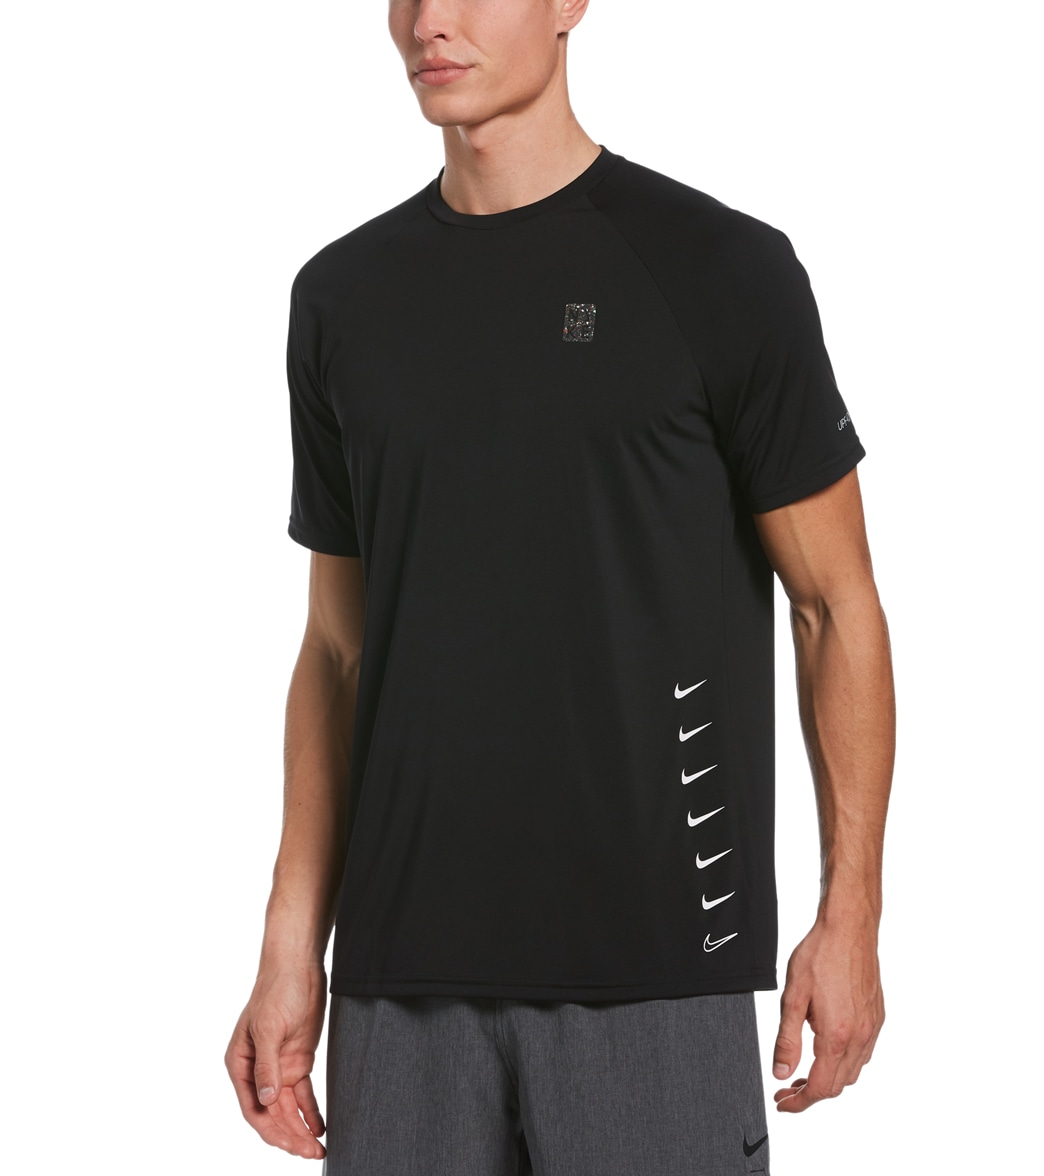 Nike Men's Multi Swoosh Short Sleeve Hydro Rashguard Shirt - Black Medium - Swimoutlet.com